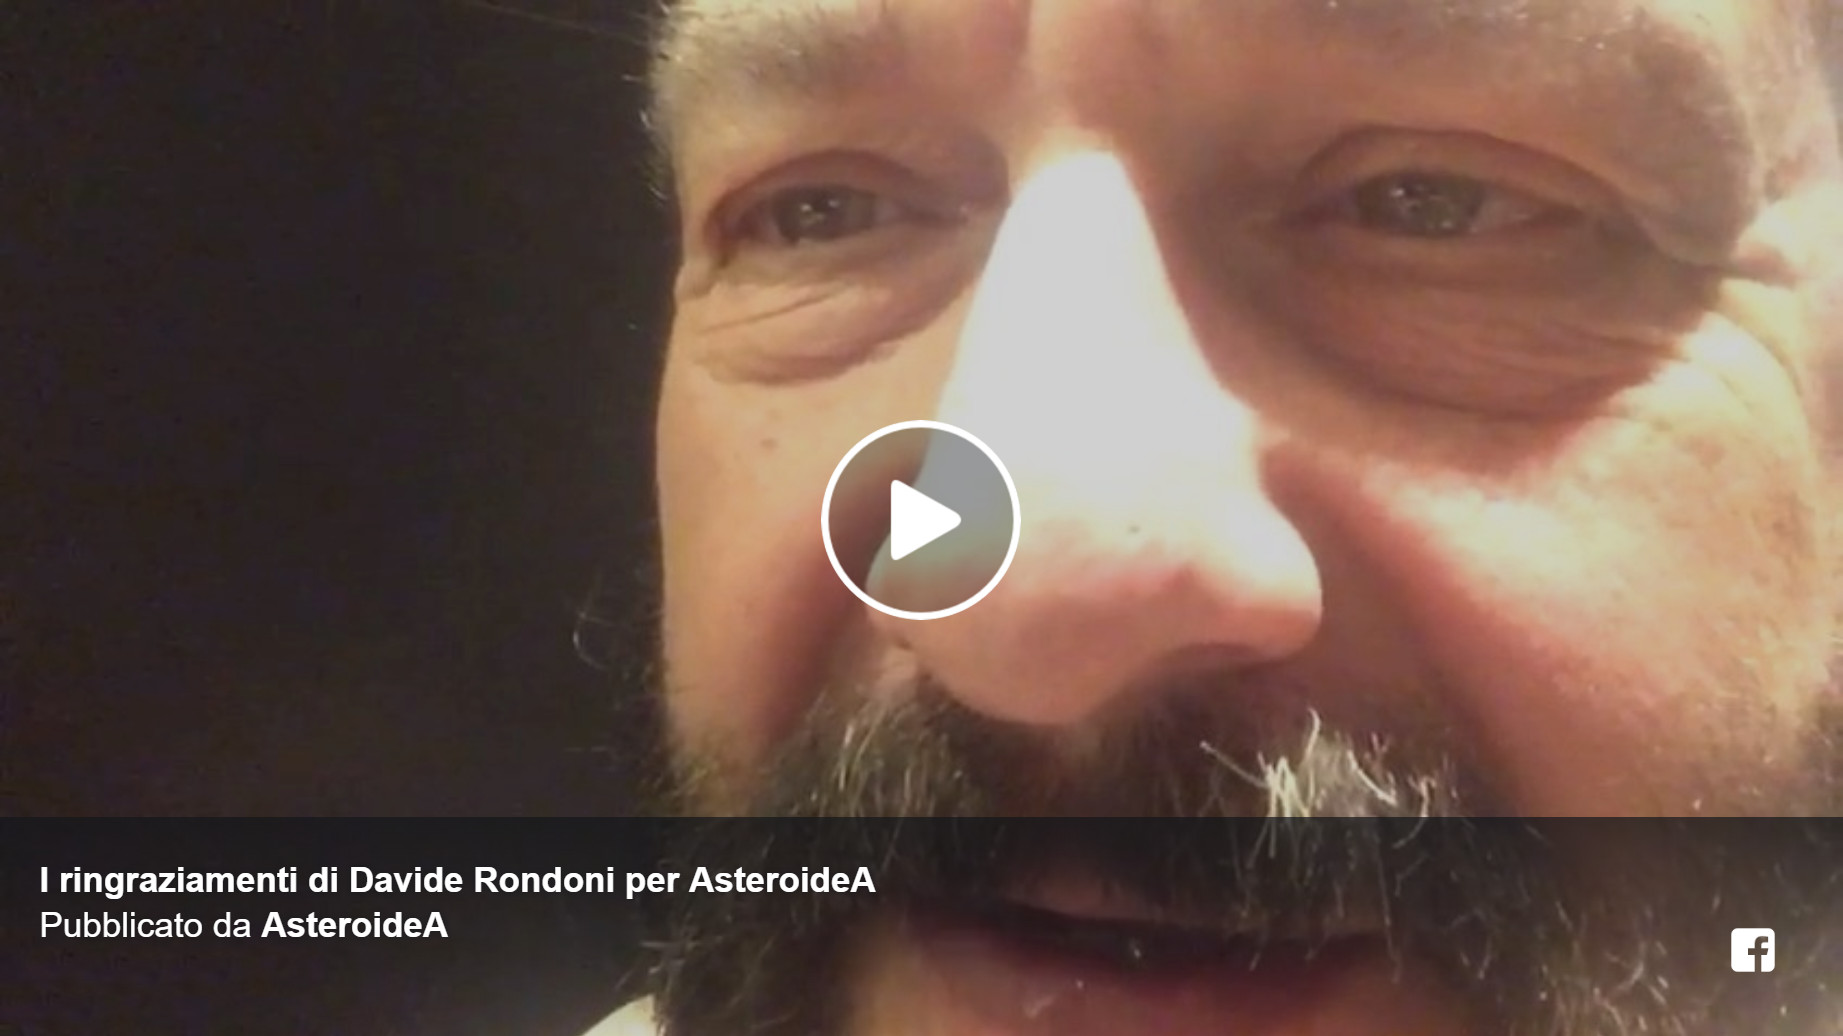 [VIDEO] I ringraziamenti di Davide Rondoni per AsteroideA